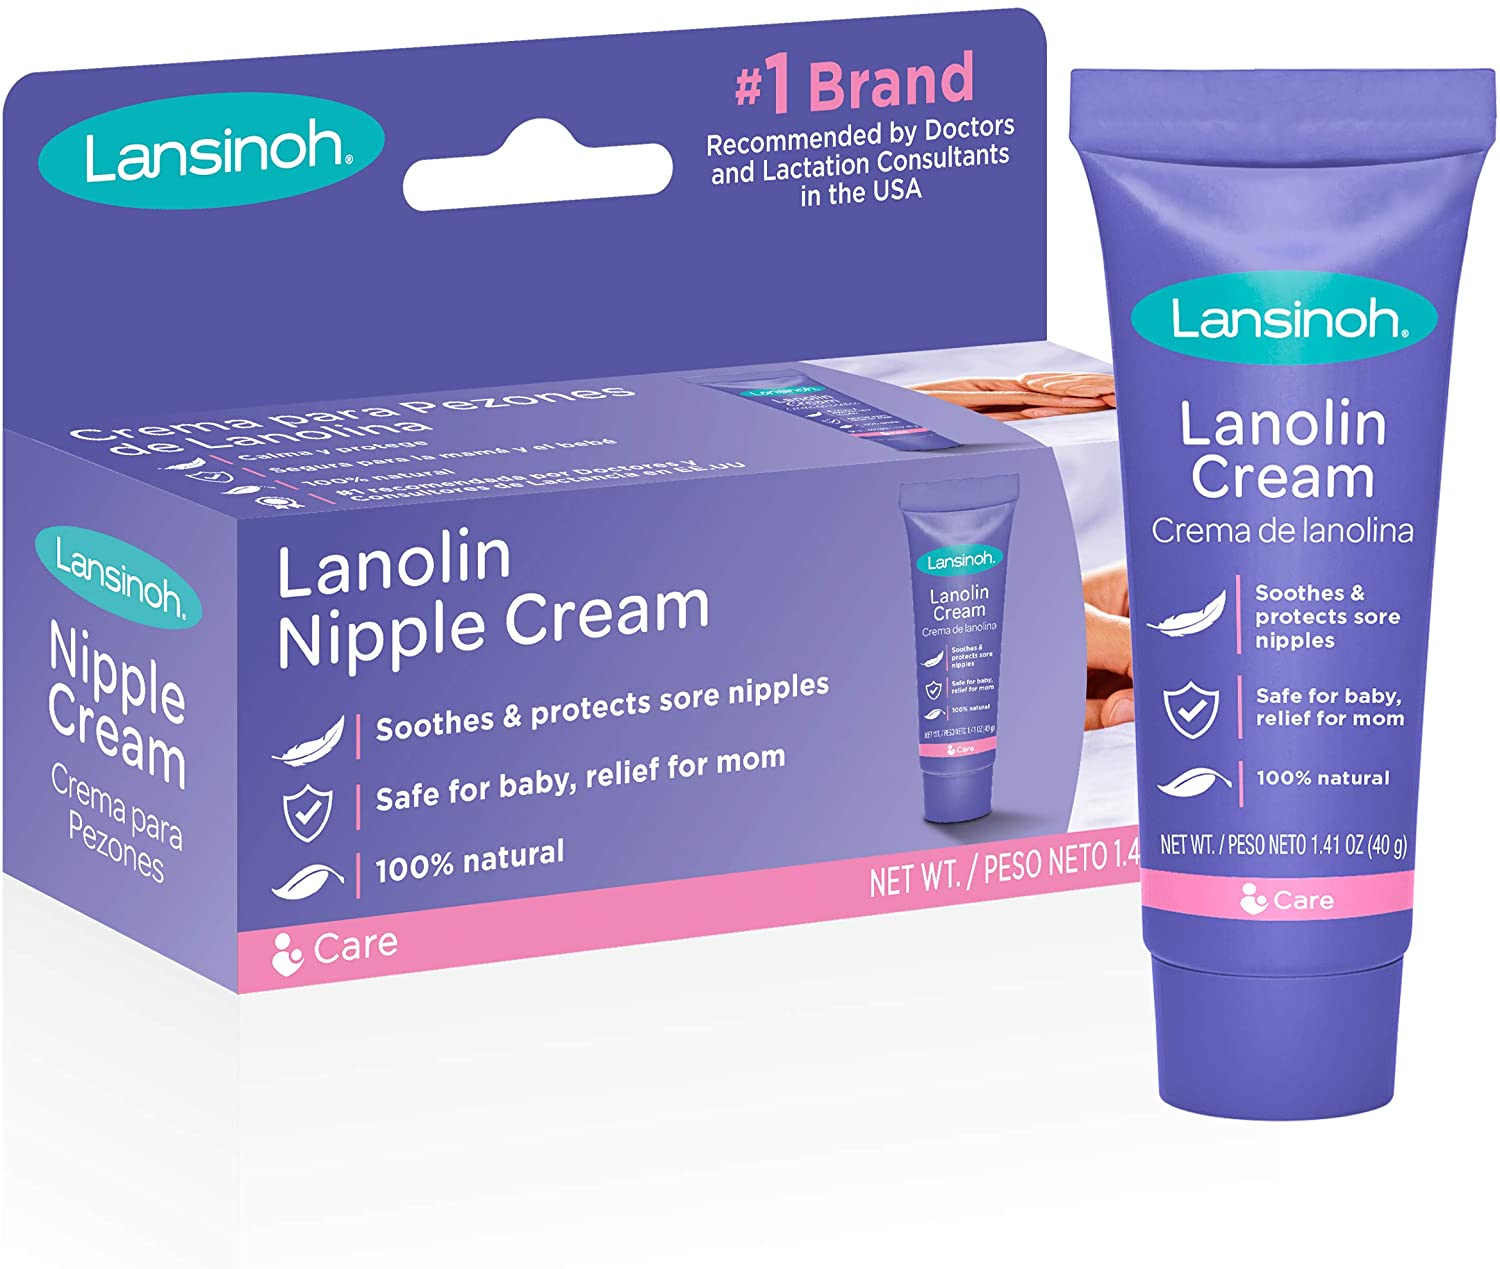 Lansinoh HPA Lanolin Cream for Breastfeeding Mothers - 1.41 oz tube